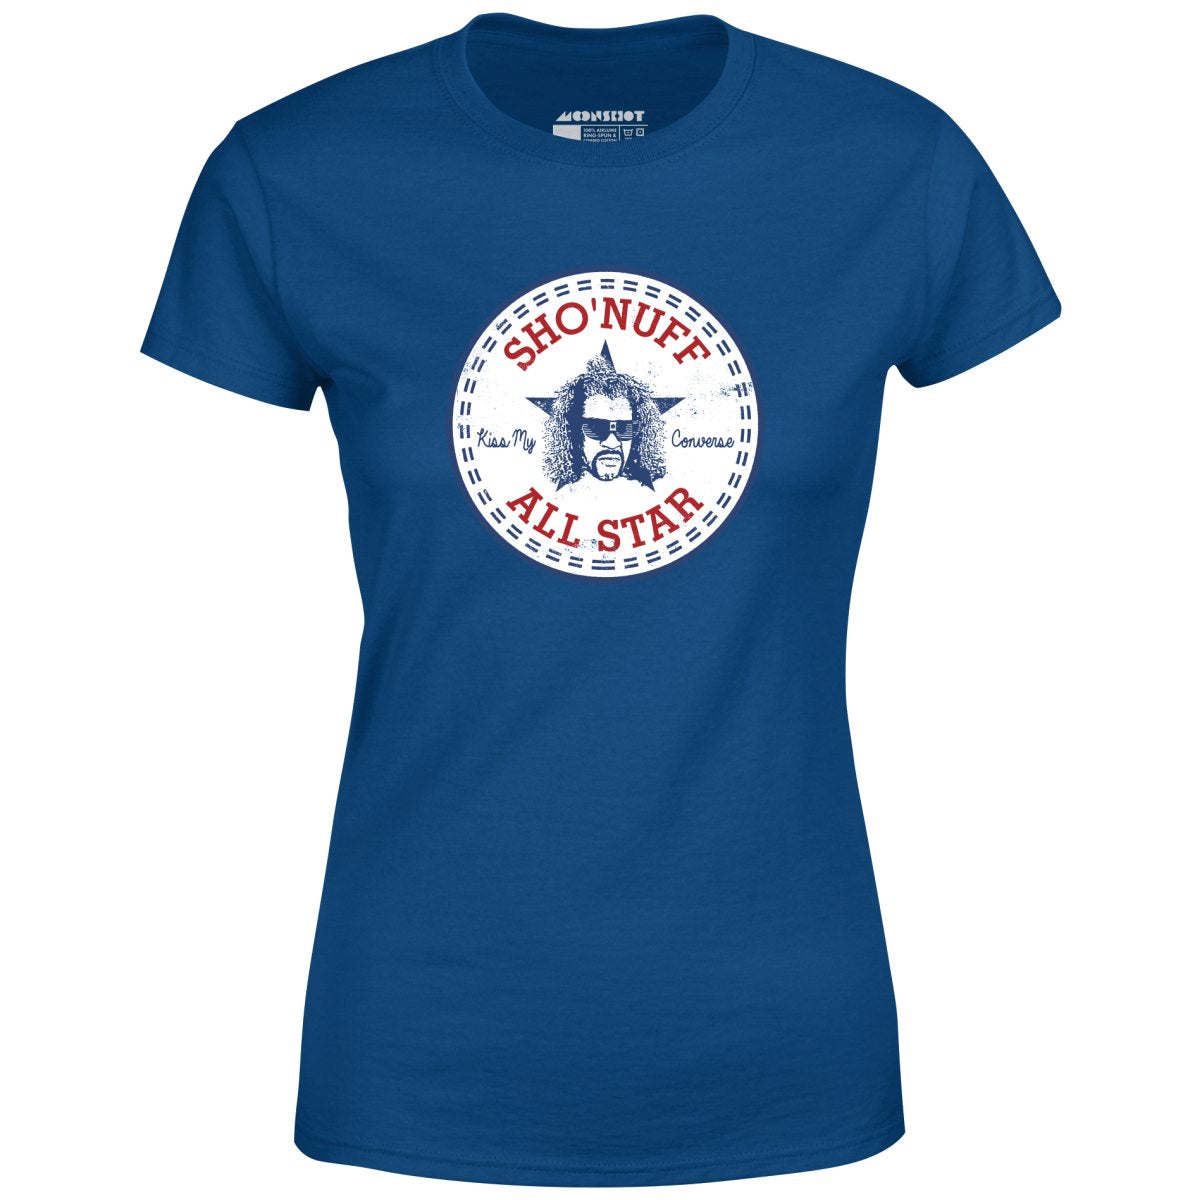 Sho'nuff All Star - Women's T-Shirt